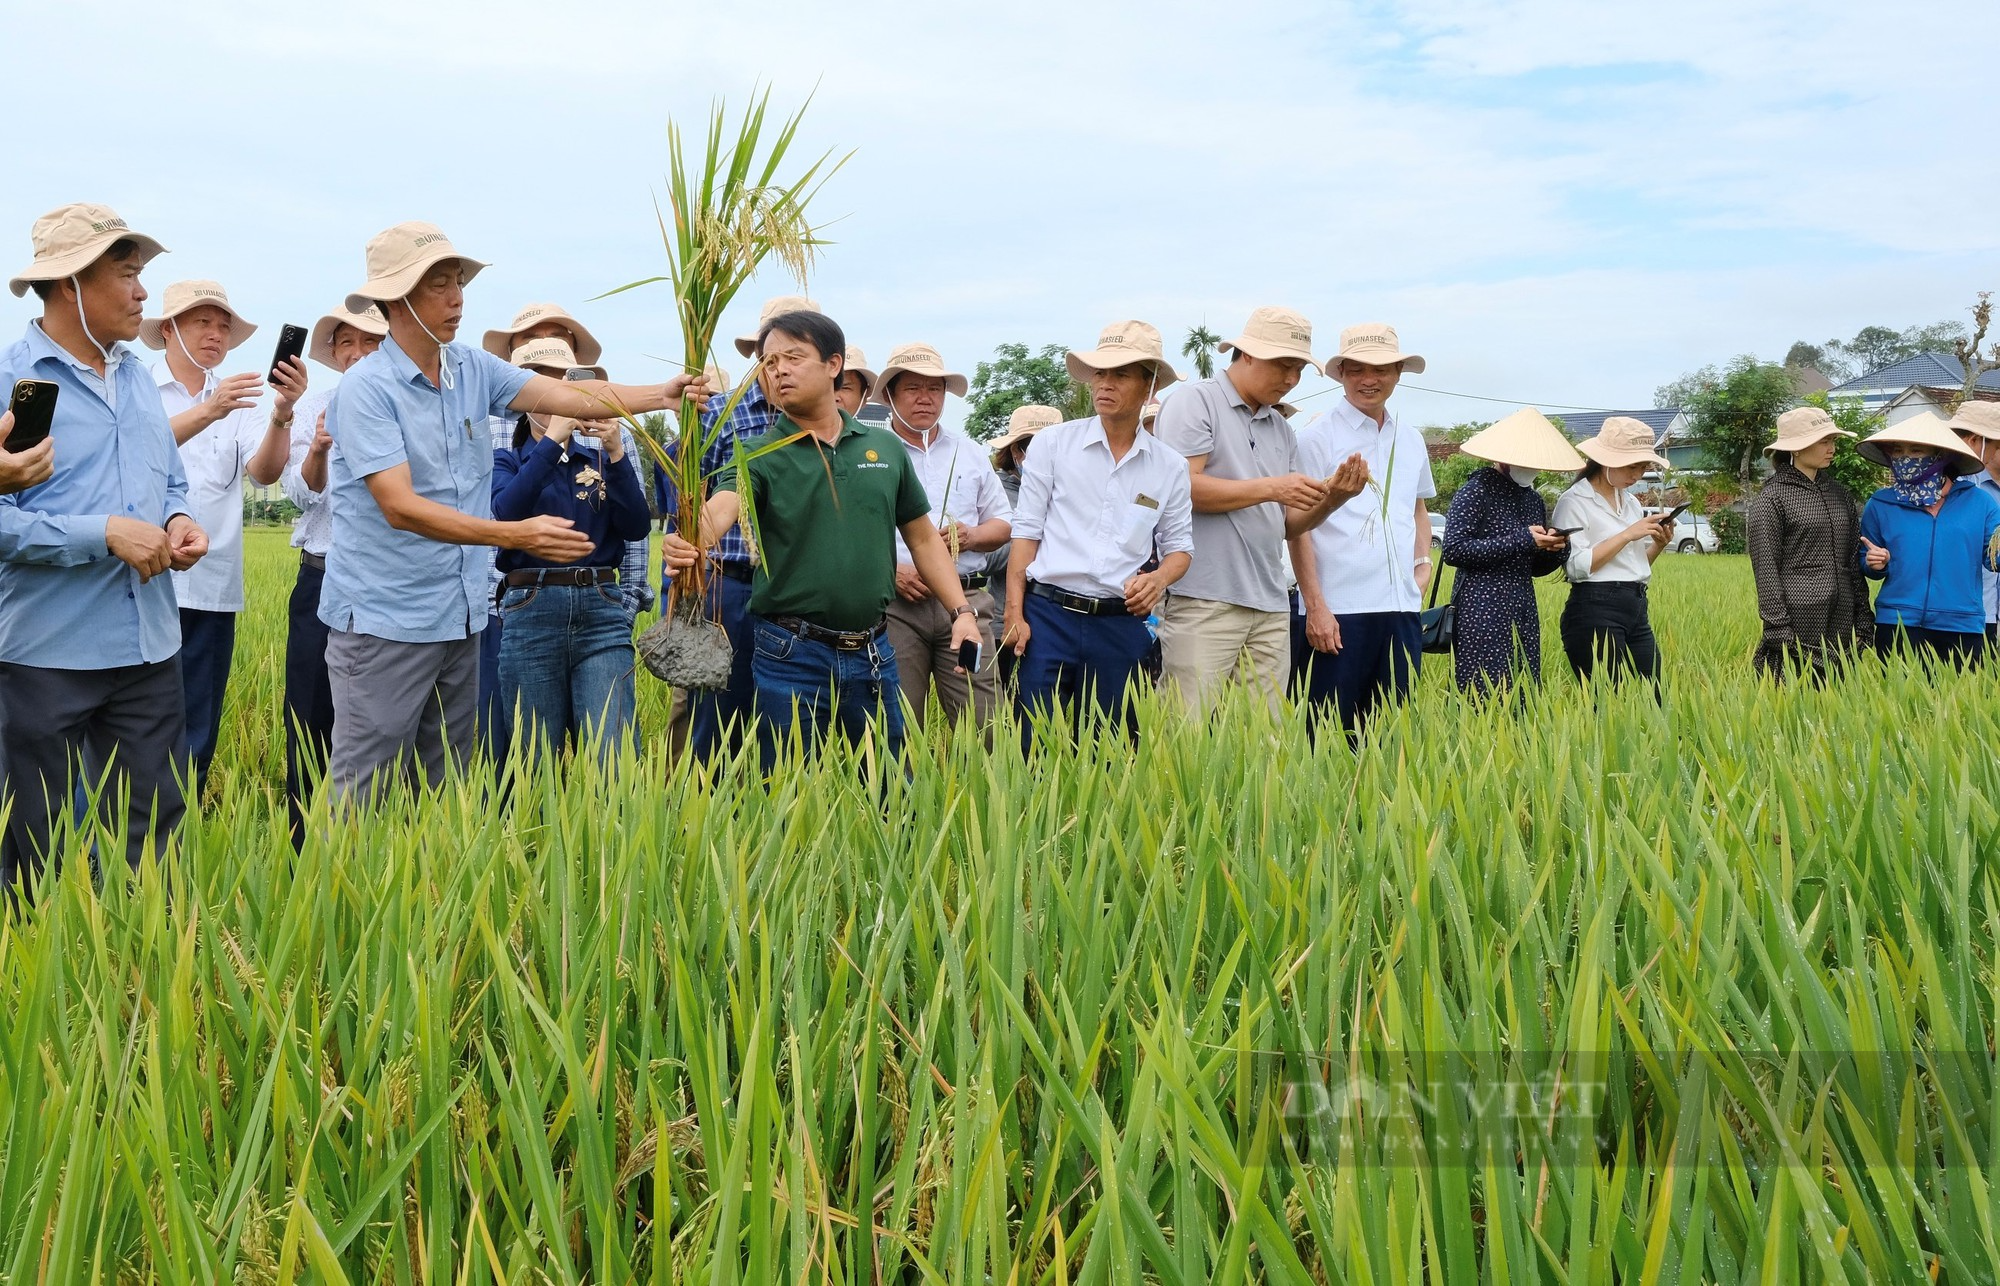 Thụy Hương 308 của Vinaseed khiến nông dân ở huyện Yên Thành, tỉnh Nghệ An bất ngờ khi đẻ khỏe, bông dài, hạt chắc - Ảnh 8.